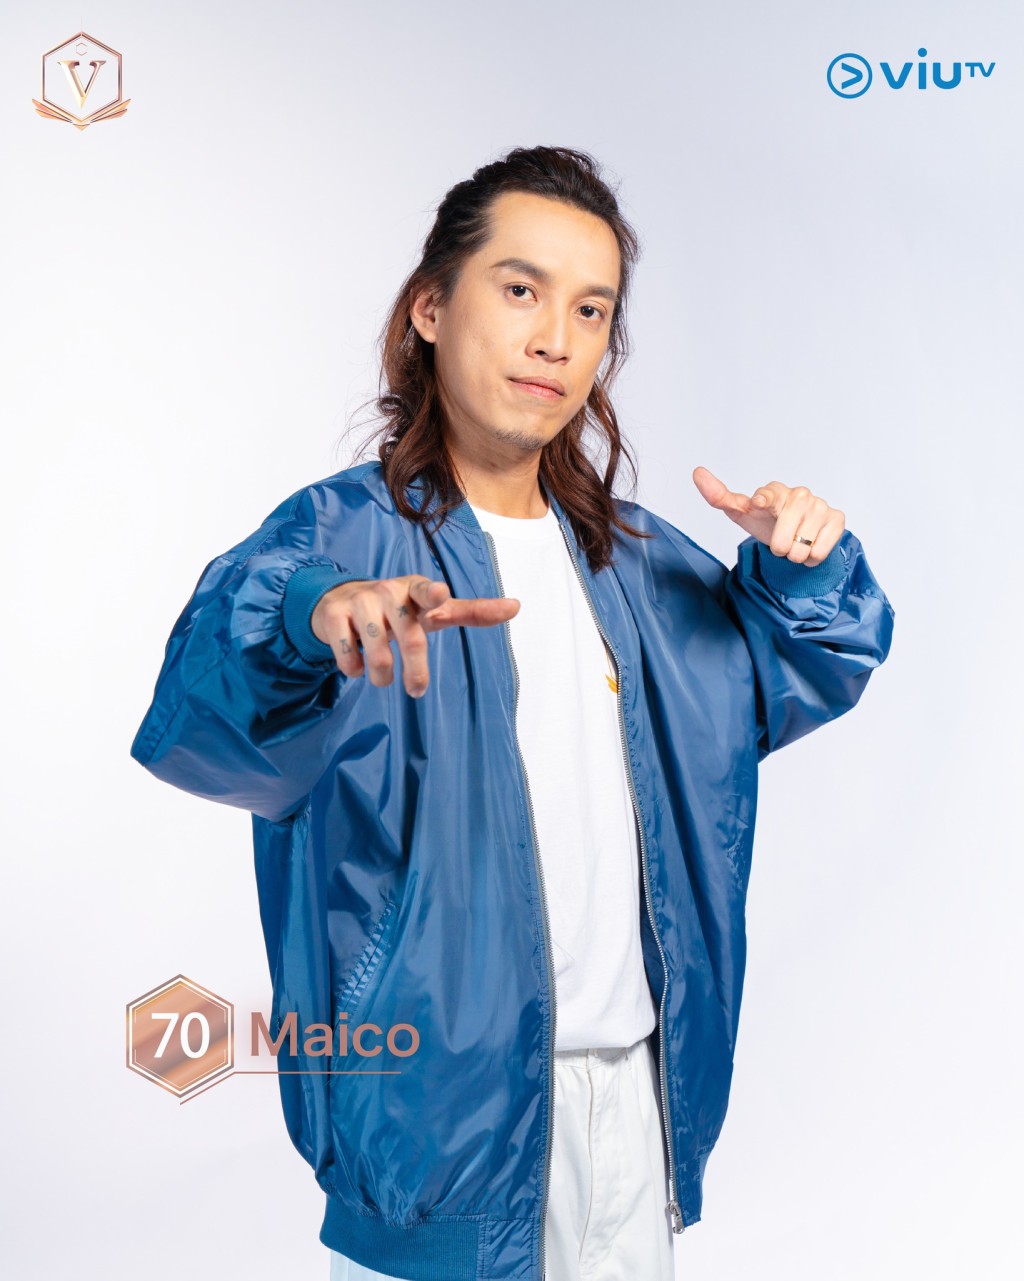 郑仲豪（Maico） 年龄： 33 职业： 团队主唱兼节奏结他手 擅长： 摇滚乐 IG：maico_teh #吉隆坡参赛者